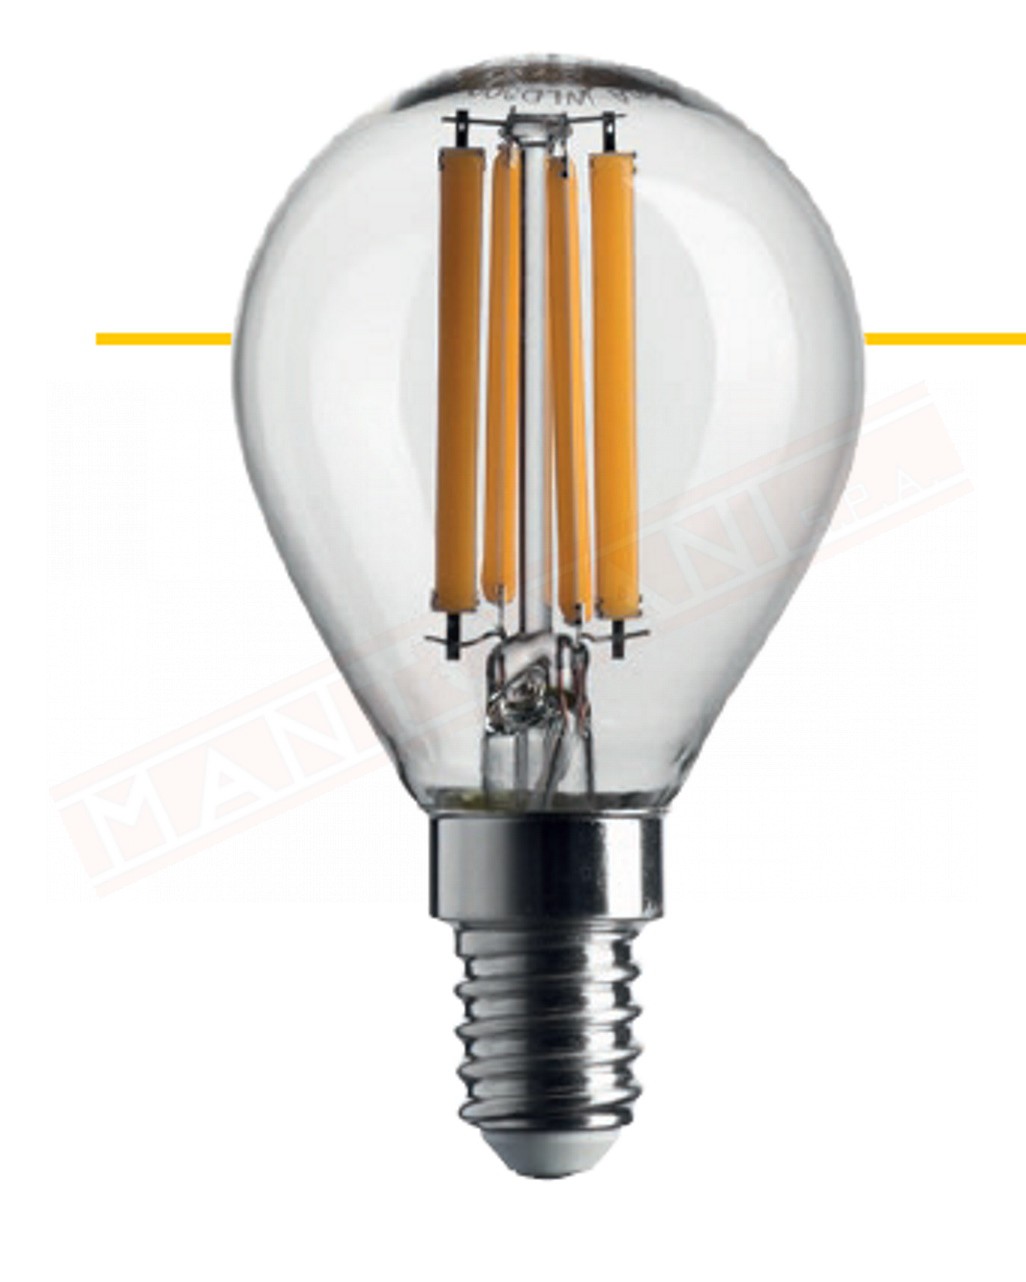 Lampadina led filamento 80x45mm sfera trasparente 6w = 60 w 806 lumen 2700k classe energetica A++ non dimmerabile